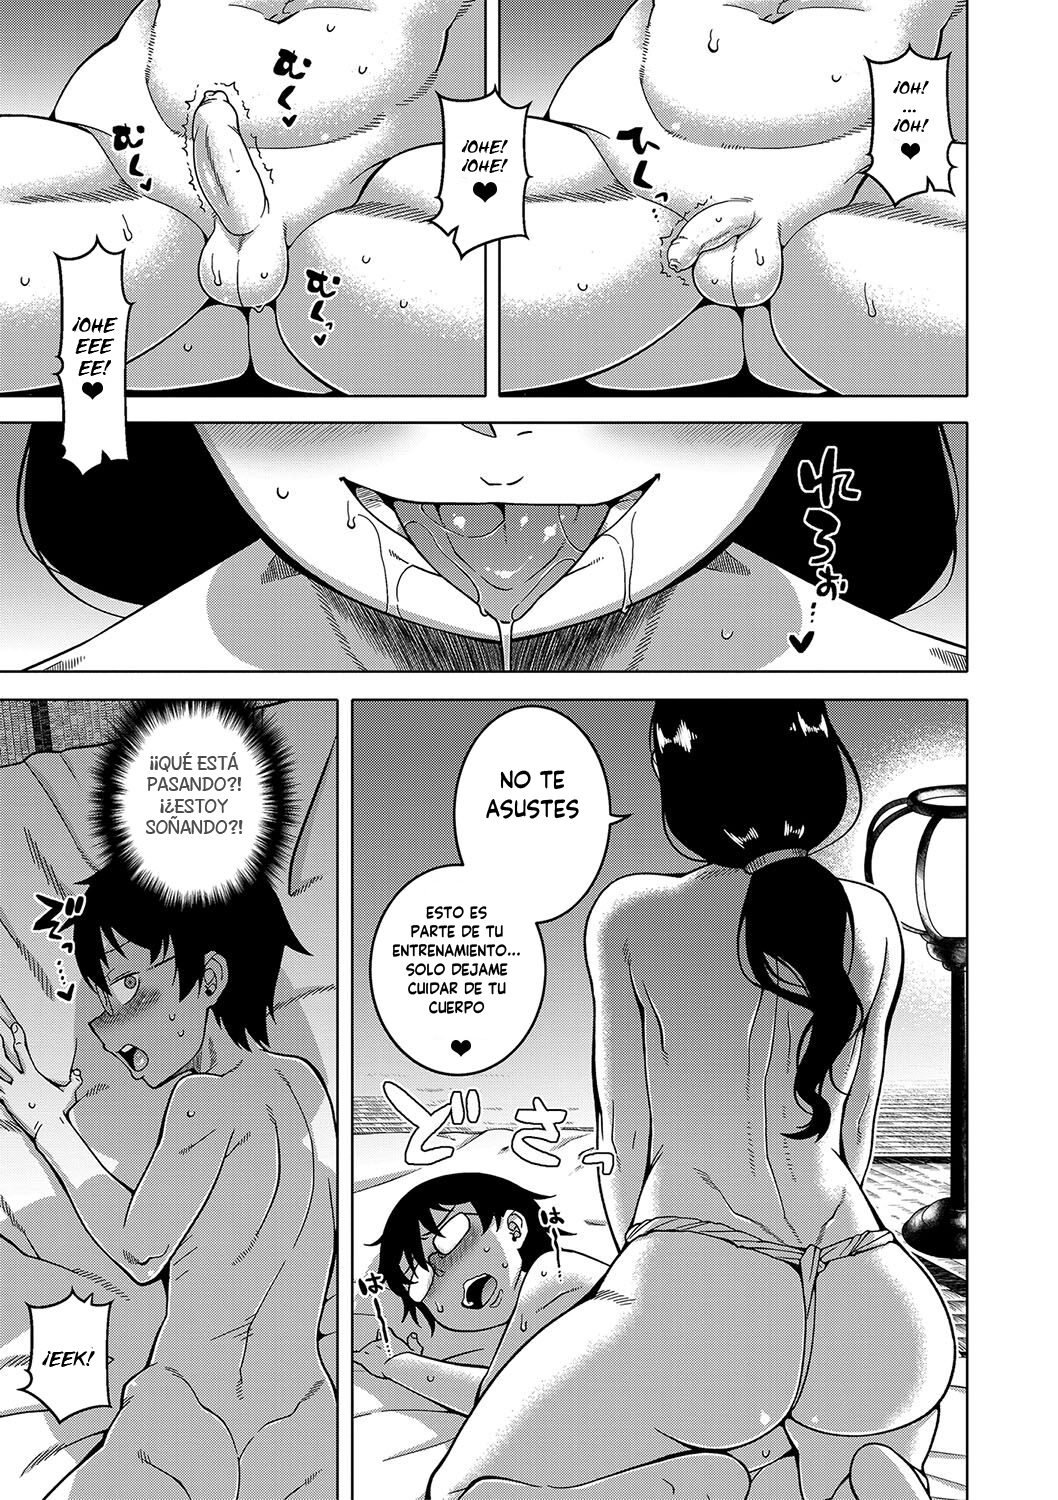 Manga KAMI-SAMA NO TSUKURIKATA-THE MAKING OF A CULT LEADER Chapter 1 image number 12